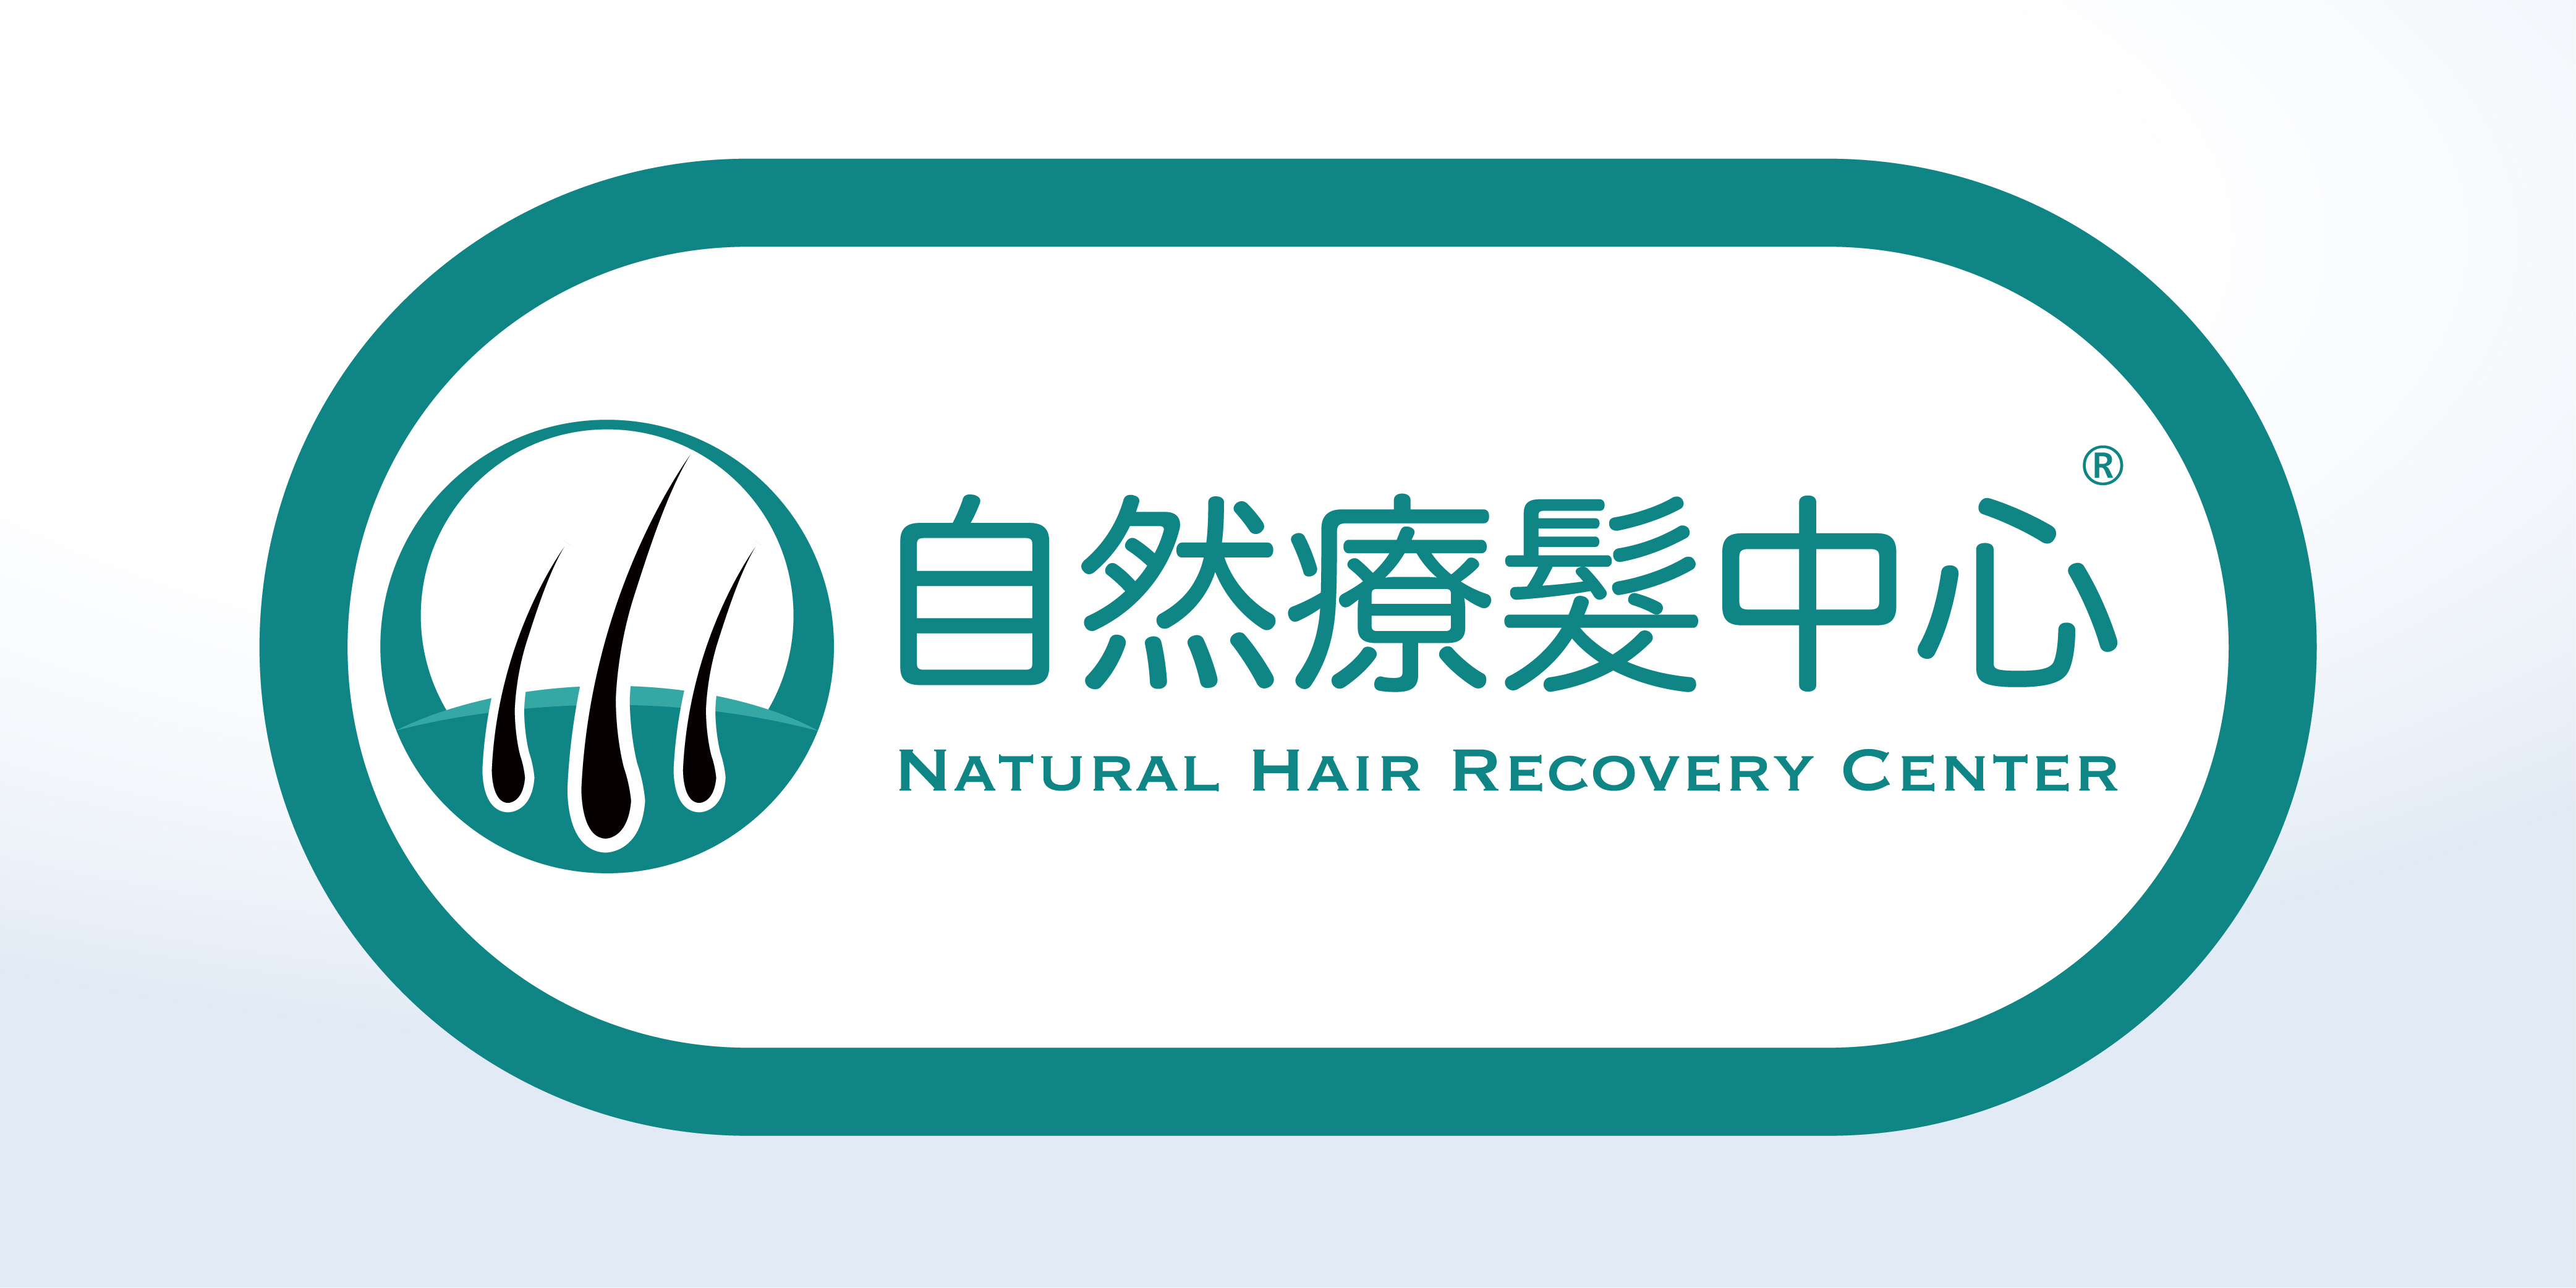 香港美髮網 HK Hair Salon 髮型屋Salon / 髮型師: 自然療髮中心 Natural Hair Recovery Center ®